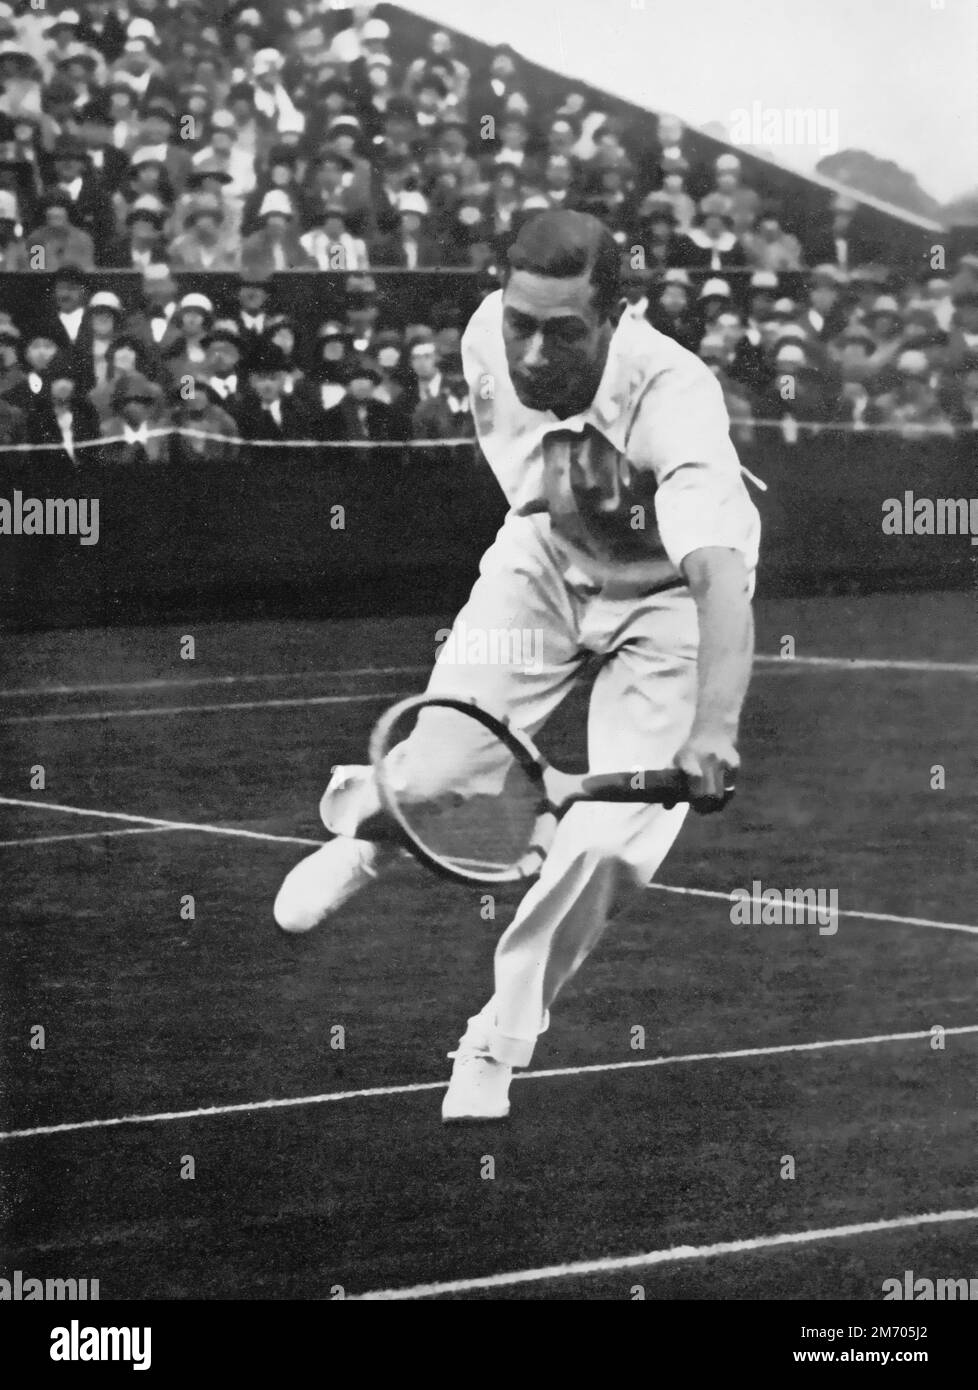 Le duc de York participe aux doubles hommes aux Championnats de Wimbledon 1926. Le duc de York, futur roi George VI (1895-1952), en partenariat avec son mentor et conseiller Louis Greig (1880-1953), la paire a été éliminée au premier tour par les anciens champions Herbert Roper Barrett (1873-1943) et Arthur Gore (1868-1928). Banque D'Images